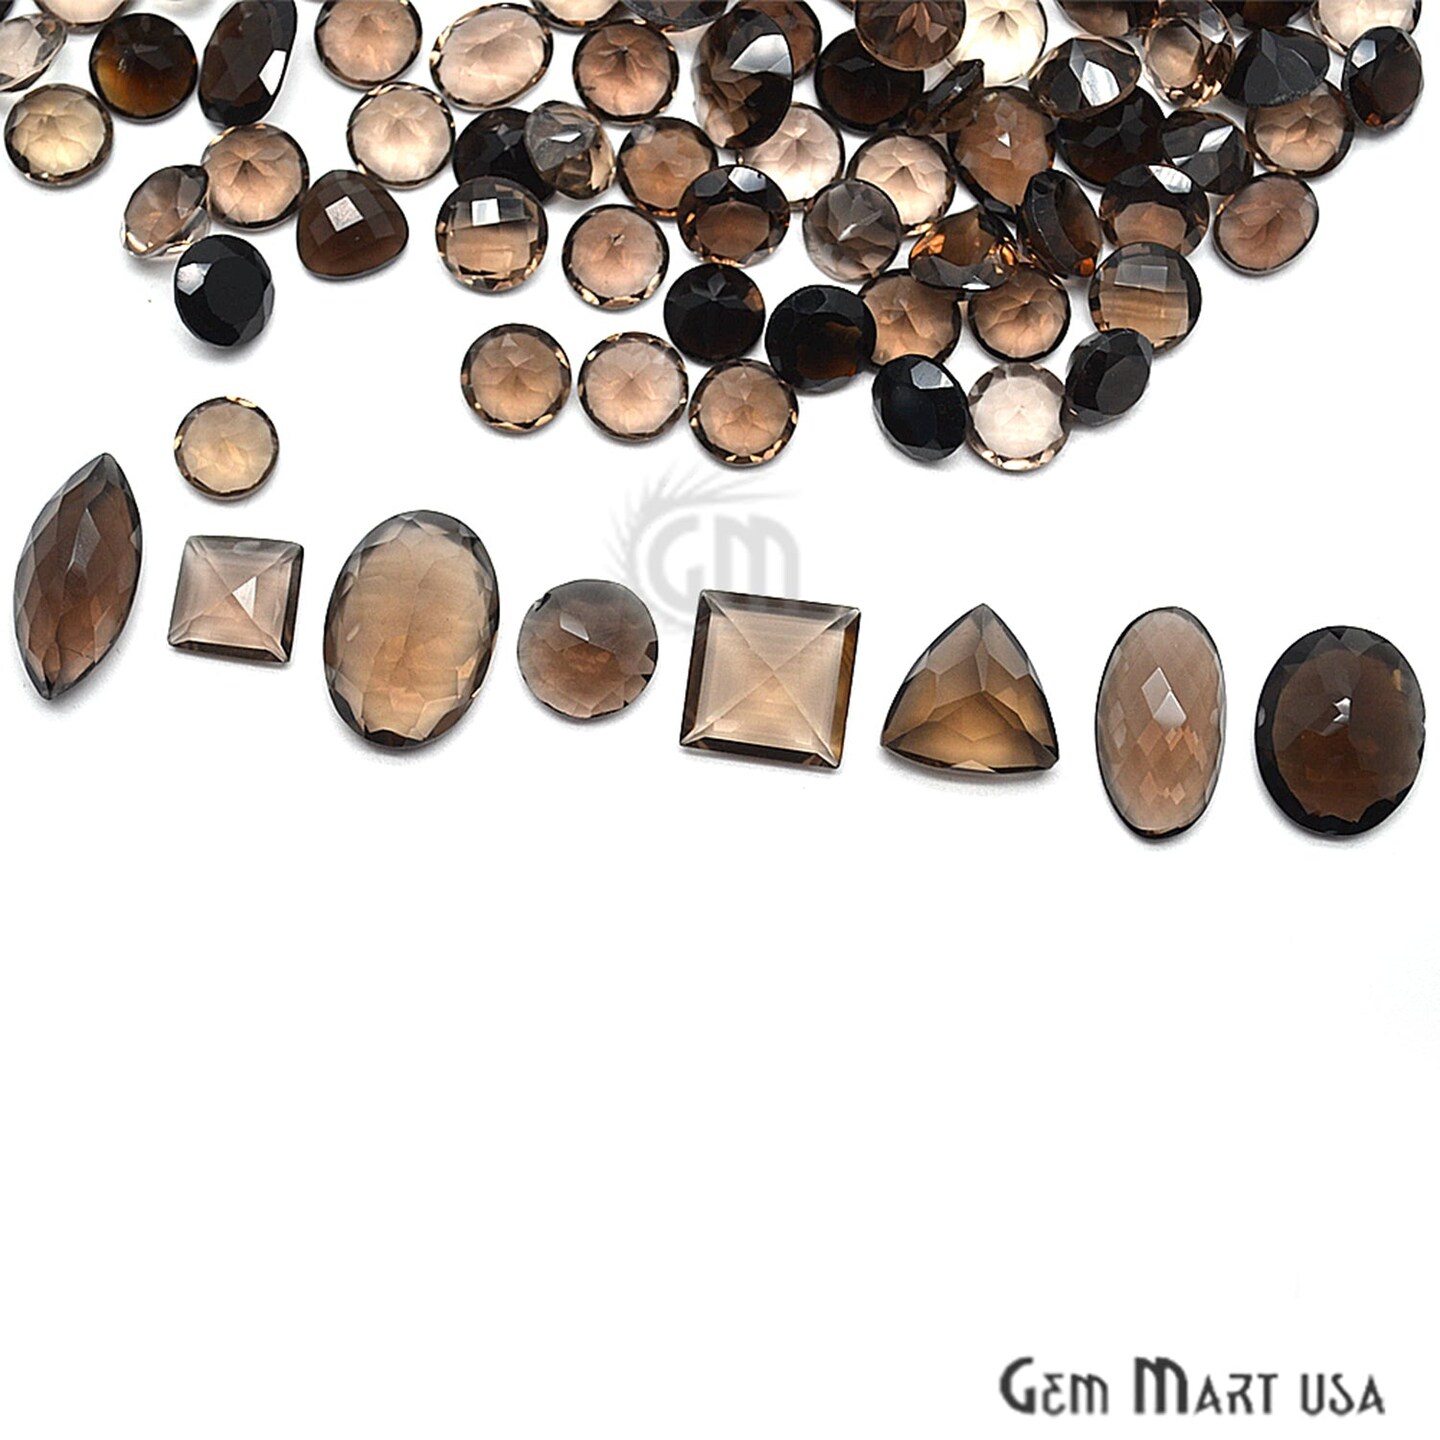 Smoky Topaz Gemstone, 100% Natural Faceted Loose Gems, November Birthstone, 10-20mm, 100 Carats, GemMartUSA (ST-60010)